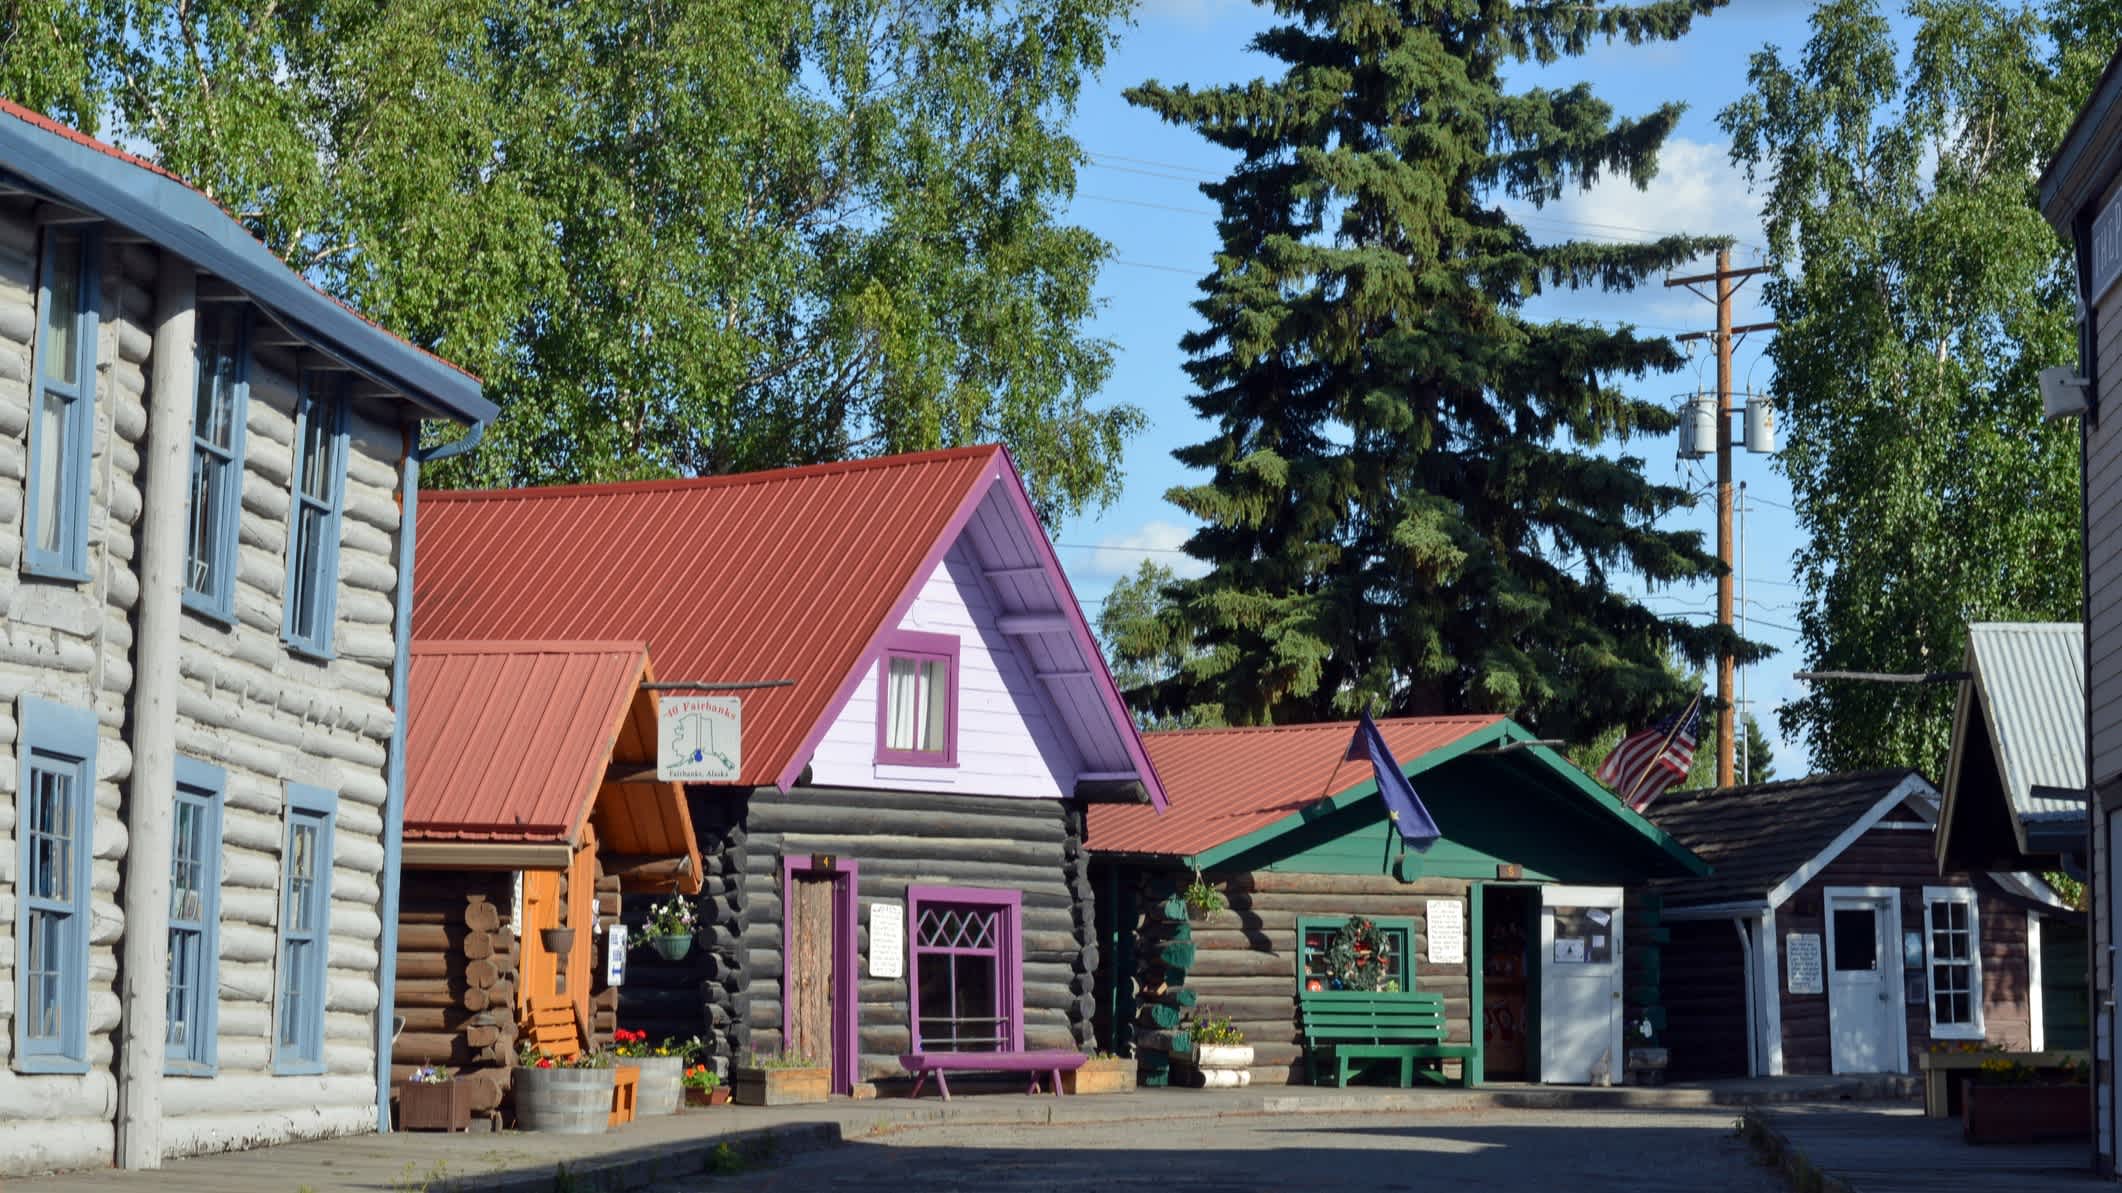 Vue des maisons en bois de l'époque de la ruée vers l'or dans le Pioneer Park à Fairbanks, Alaska, États-Unis.